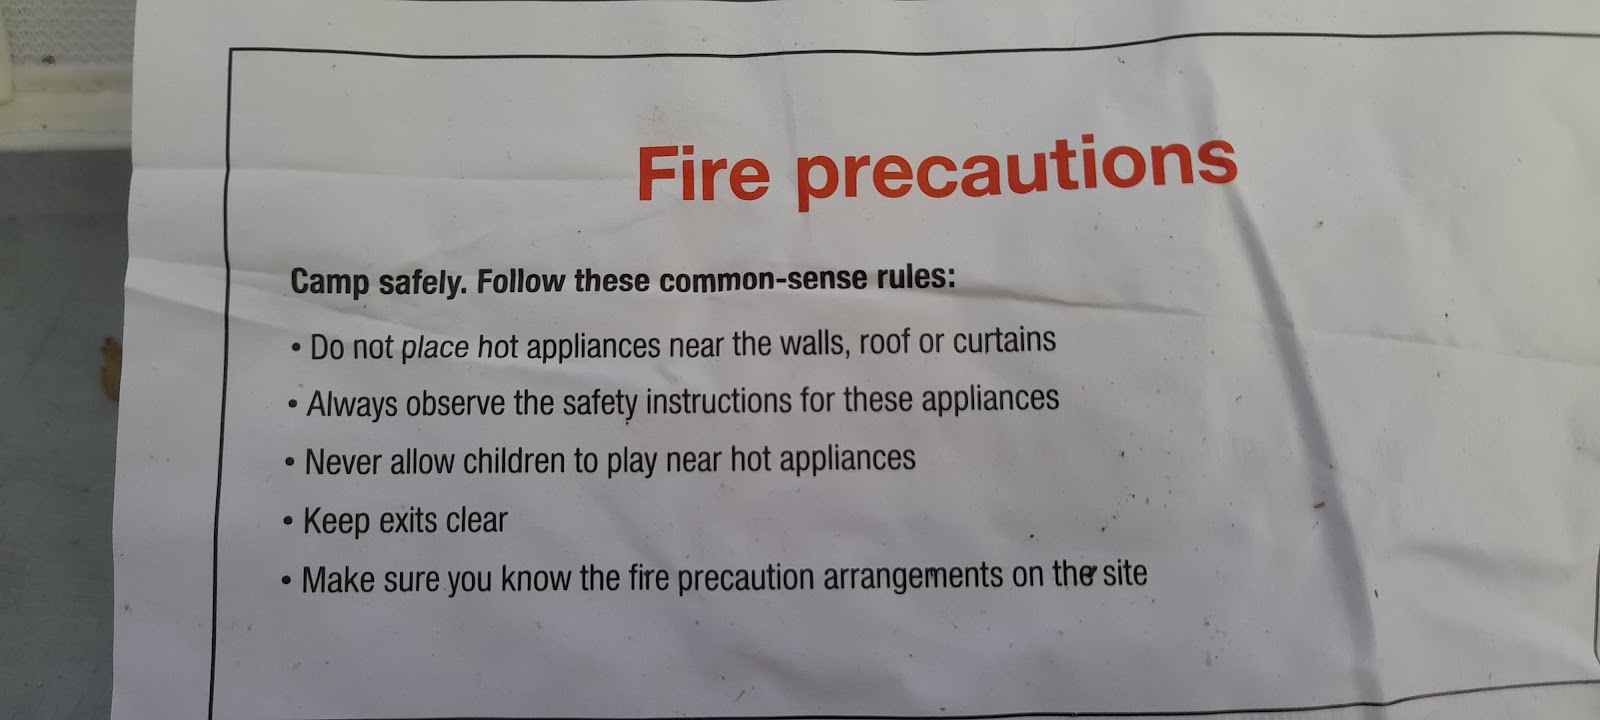 Tent fire precautions